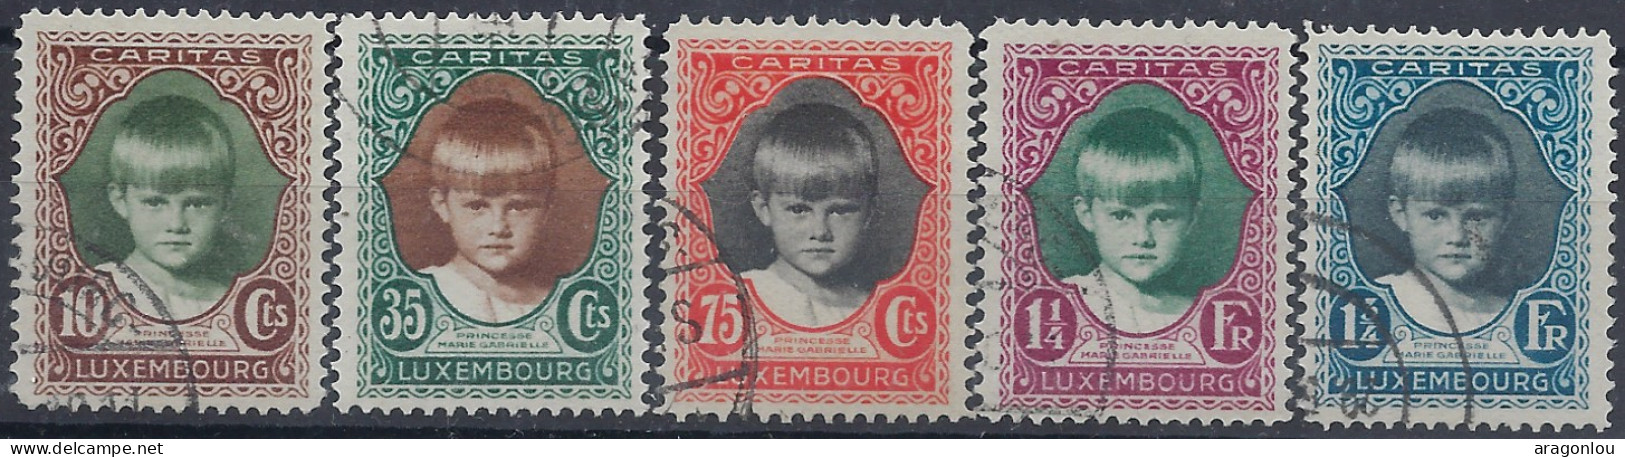 Luxembourg - Luxemburg - Timbres - 1929   Caritas   Princesse Marie-Gabrielle   Série   ° - Blokken & Velletjes